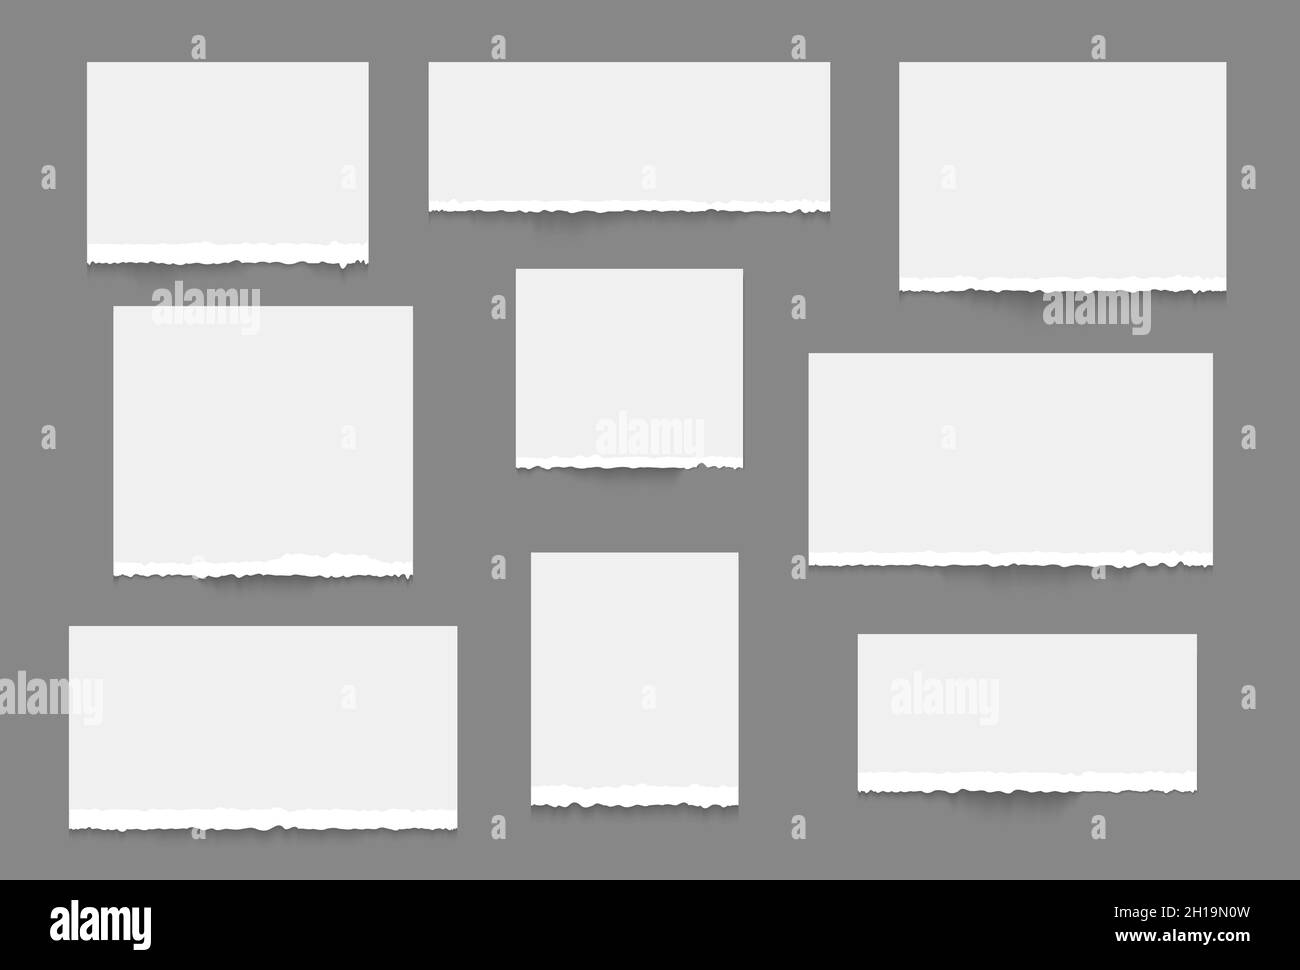 Zerrissene Papierkante. Weißes Notizbuch mit Papierstreifen. Vektor Piese Notizblätter realistisches Design Stock Vektor